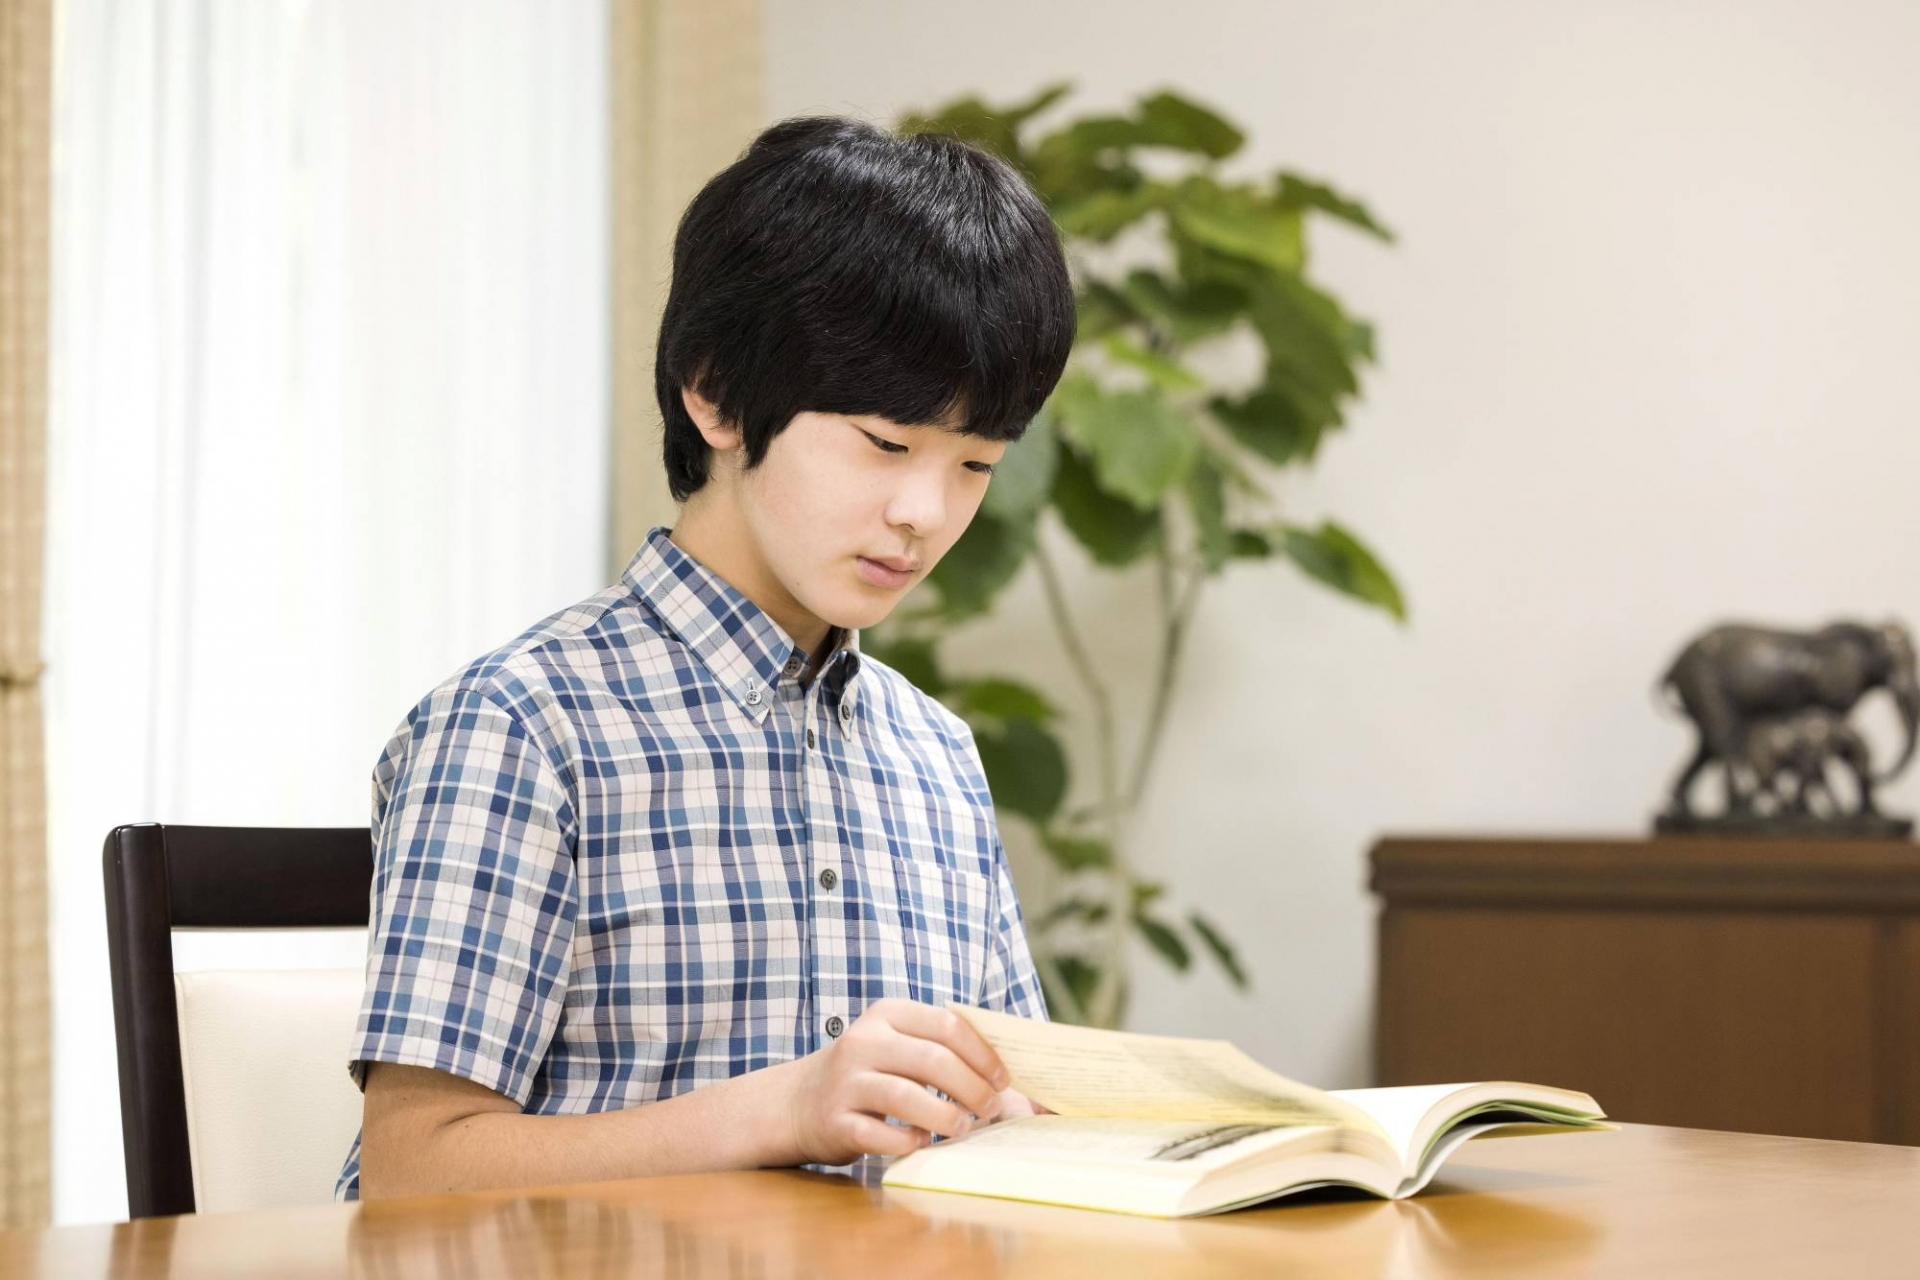 Hoàng tử Hisahito đang theo học năm thứ 3 của THCS thuộc Đại học Ochanomizu